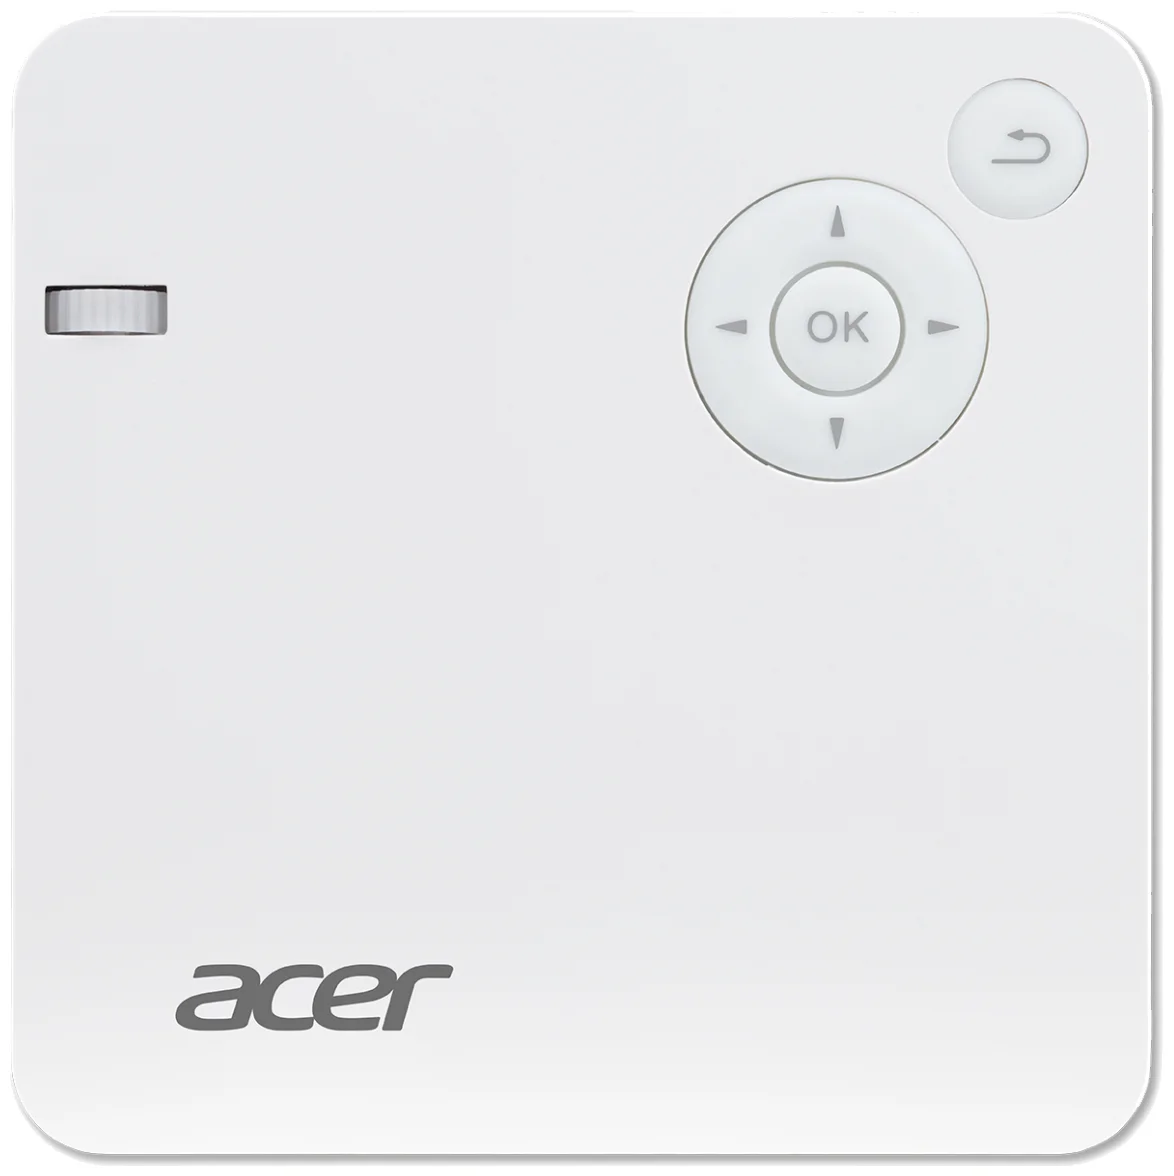 Acer C202i - контрастность: 5000:1